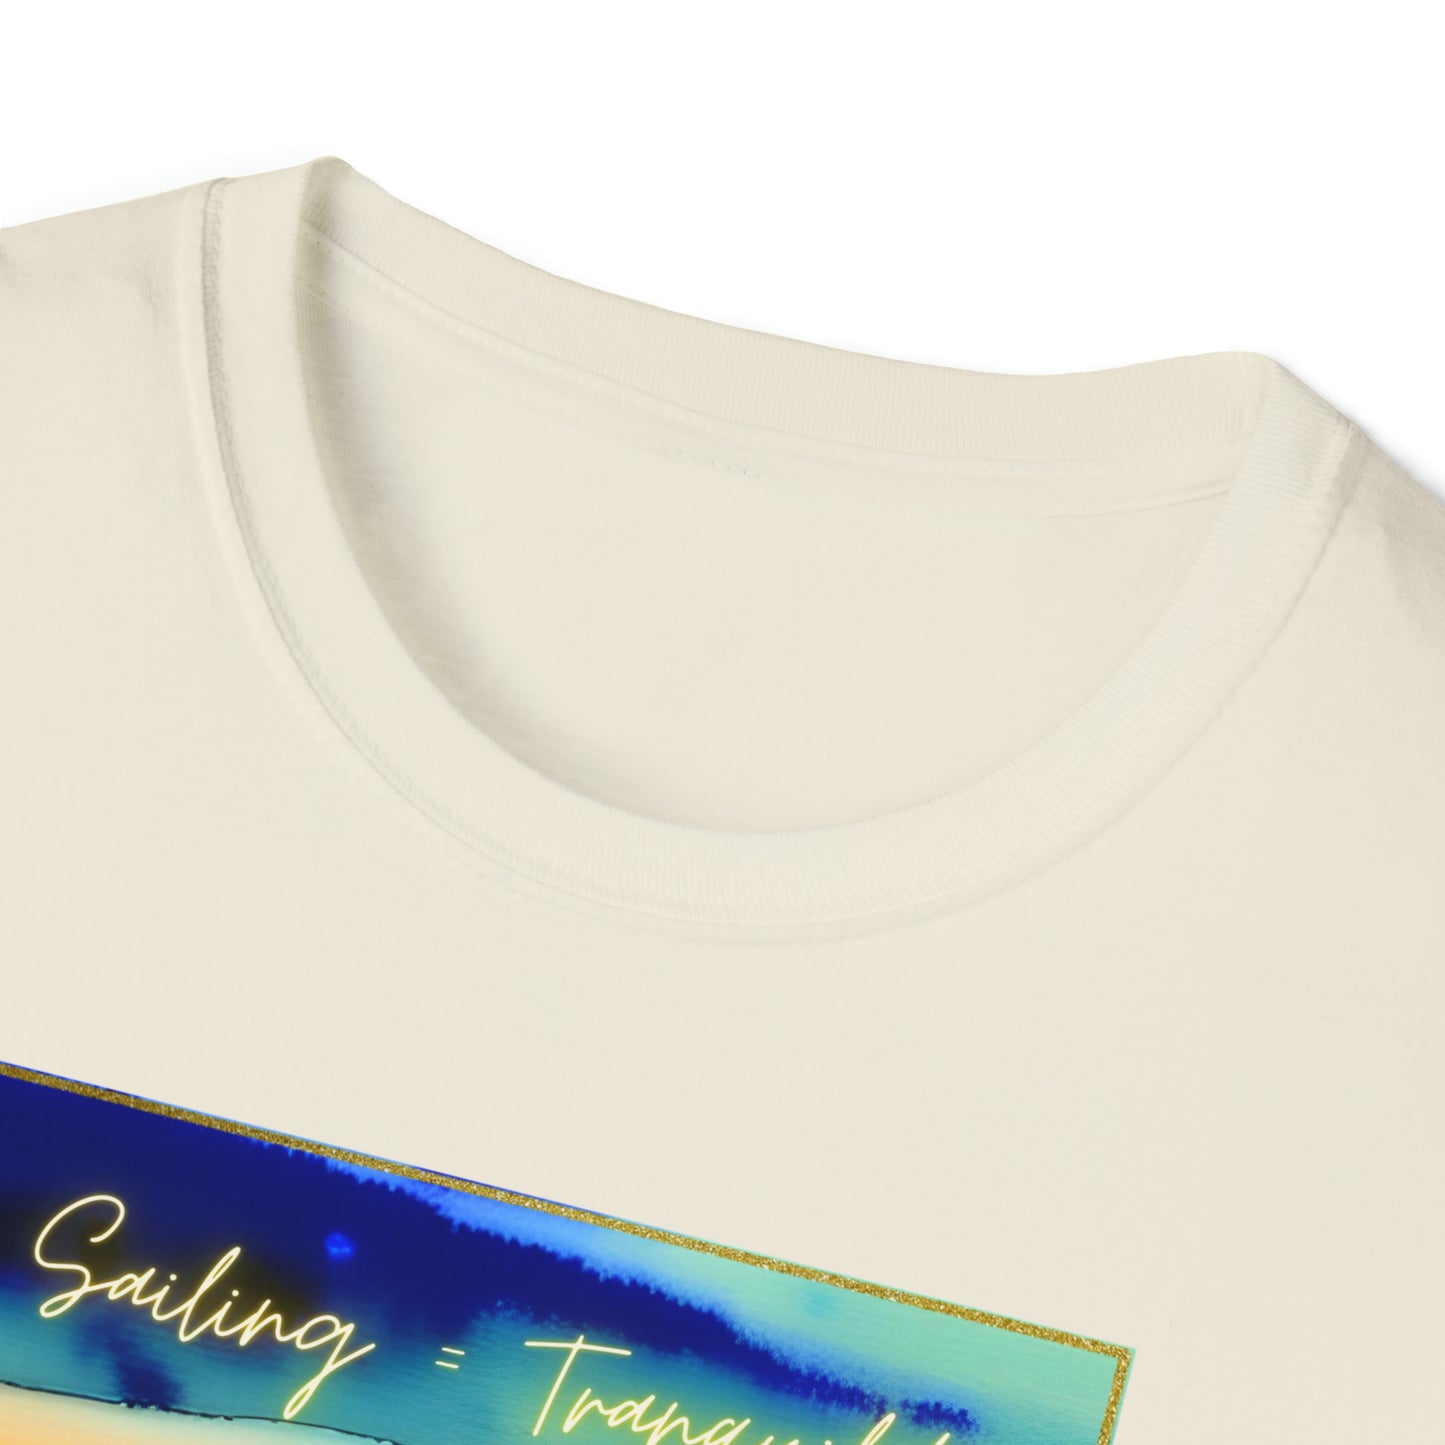 Sailing = Tranquility - Unisex Softstyle T-Shirt